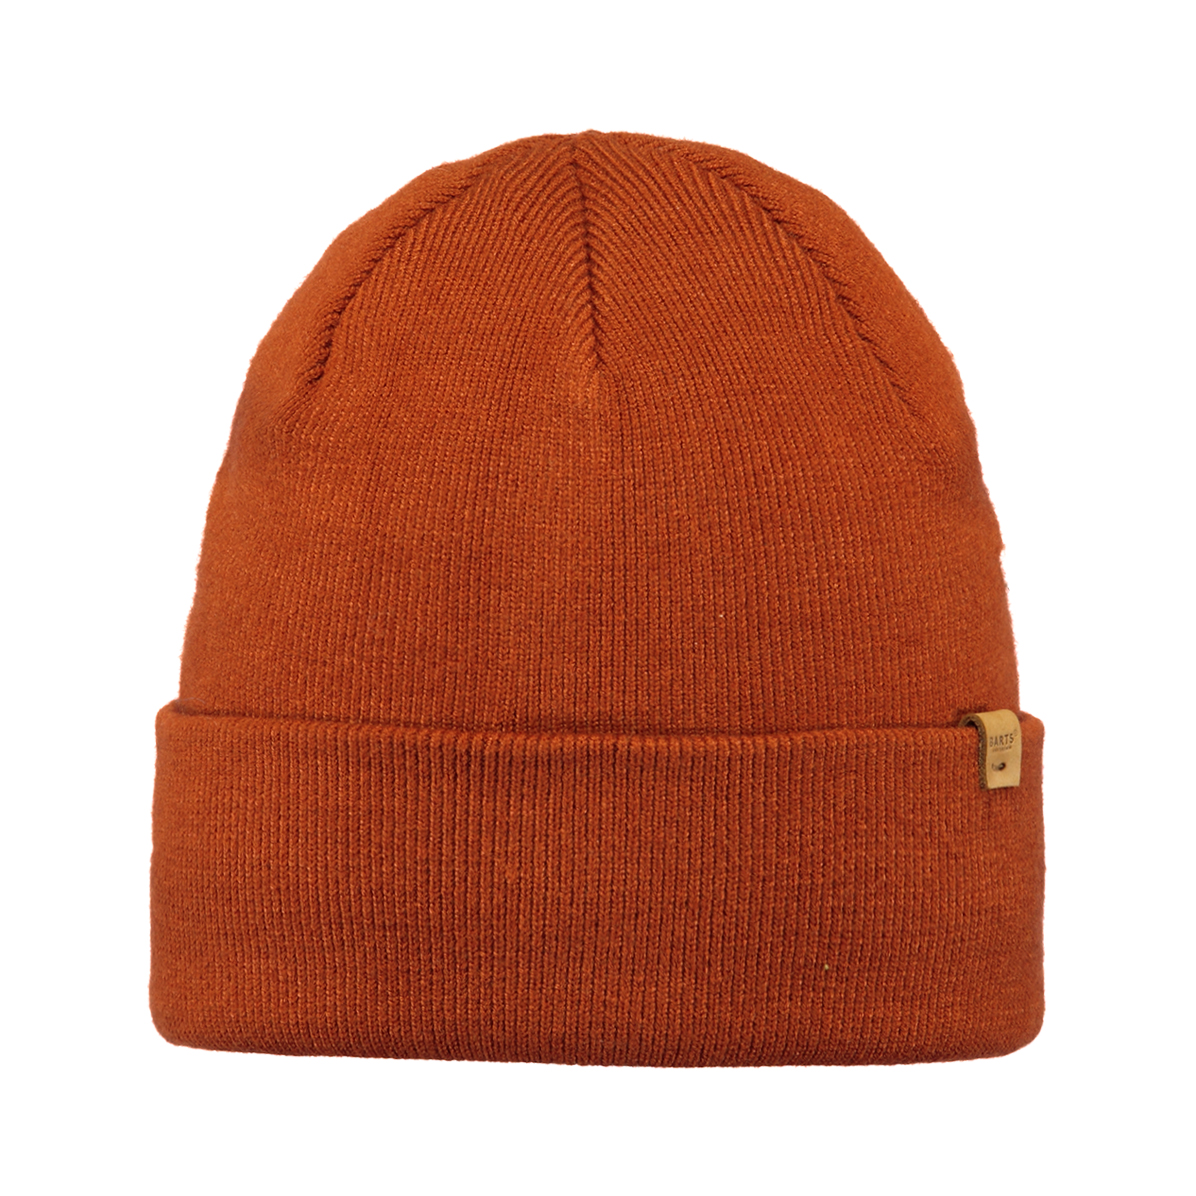 Mützen orange - Willes - Hüte / 111 / - 4040 Artikelnummer: pepo Beanie Caps